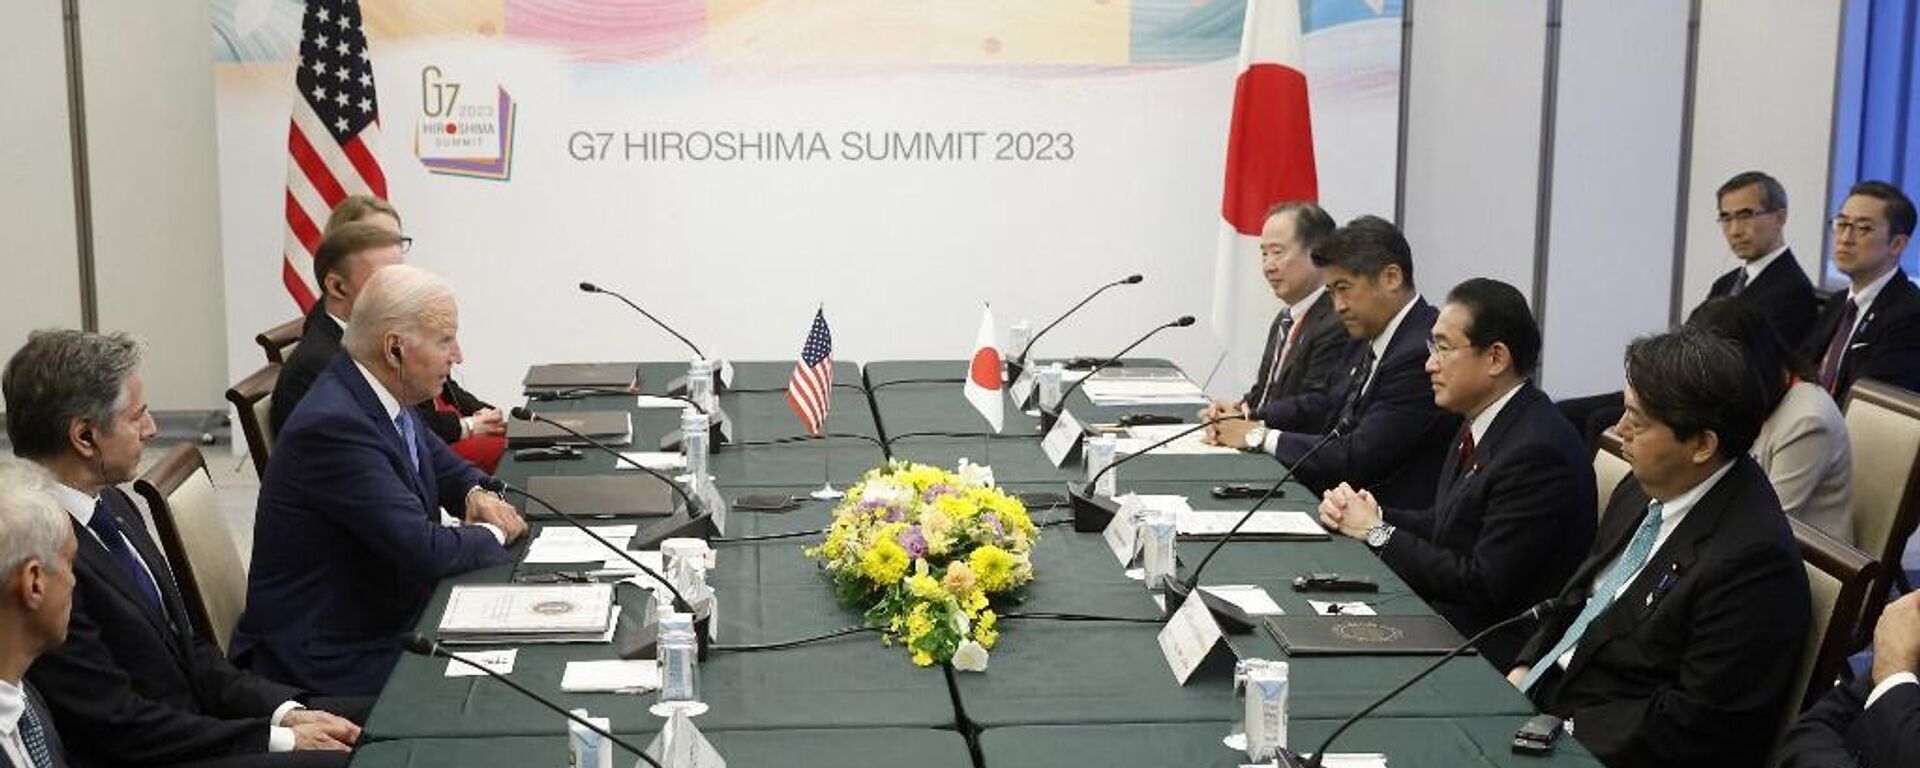 Líderes del G7 están reunidos en Japón.  - Sputnik Mundo, 1920, 18.05.2023